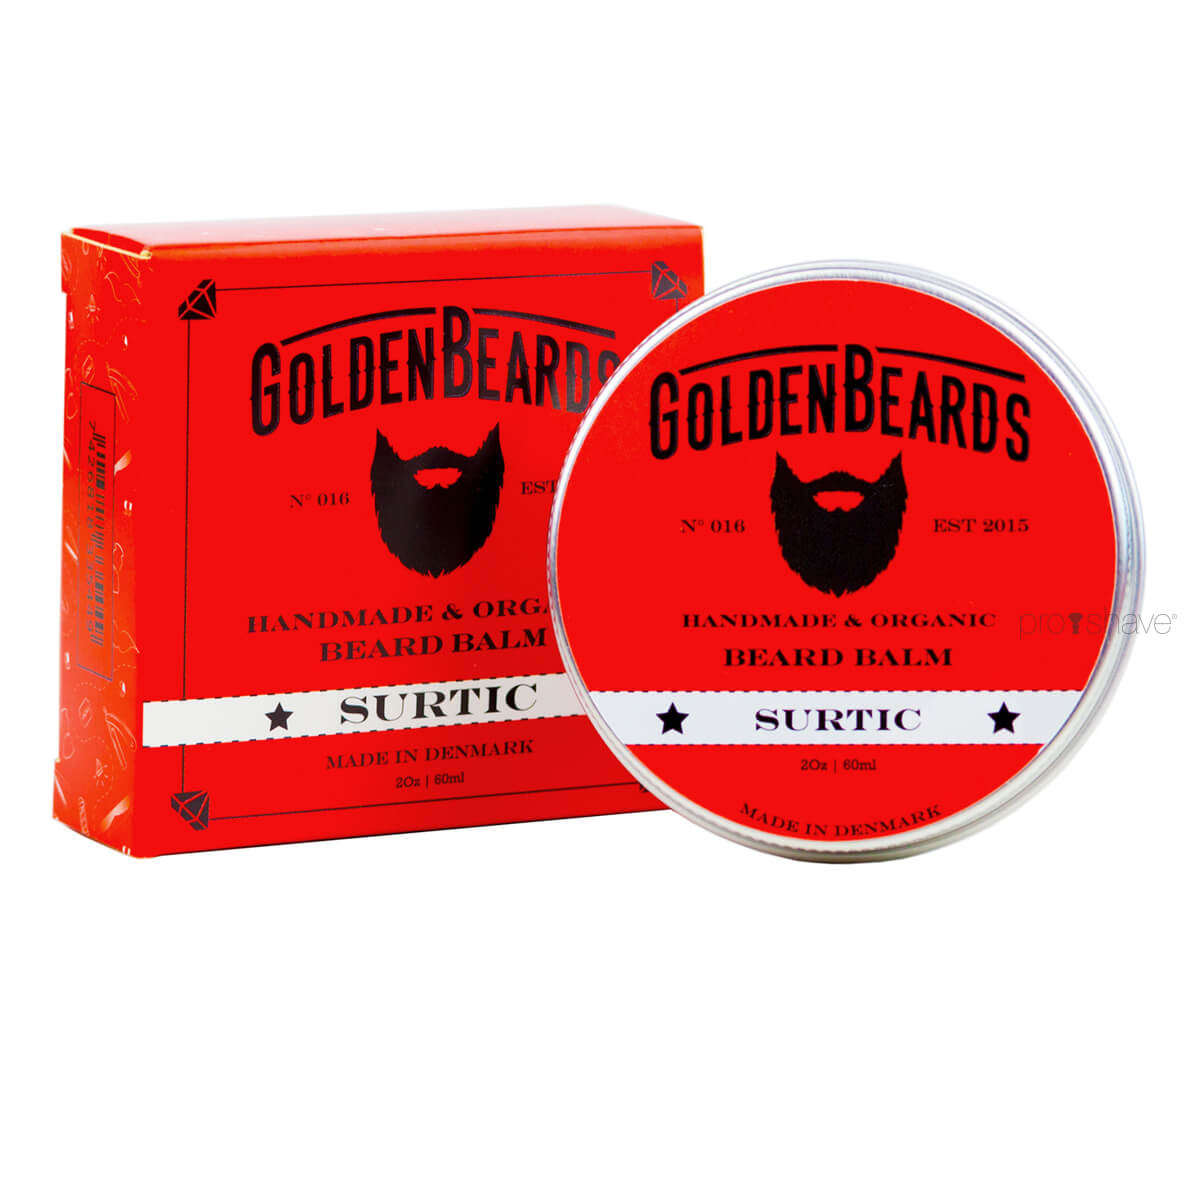 12: Golden Beards Skægbalm, Surtic, 60 ml.